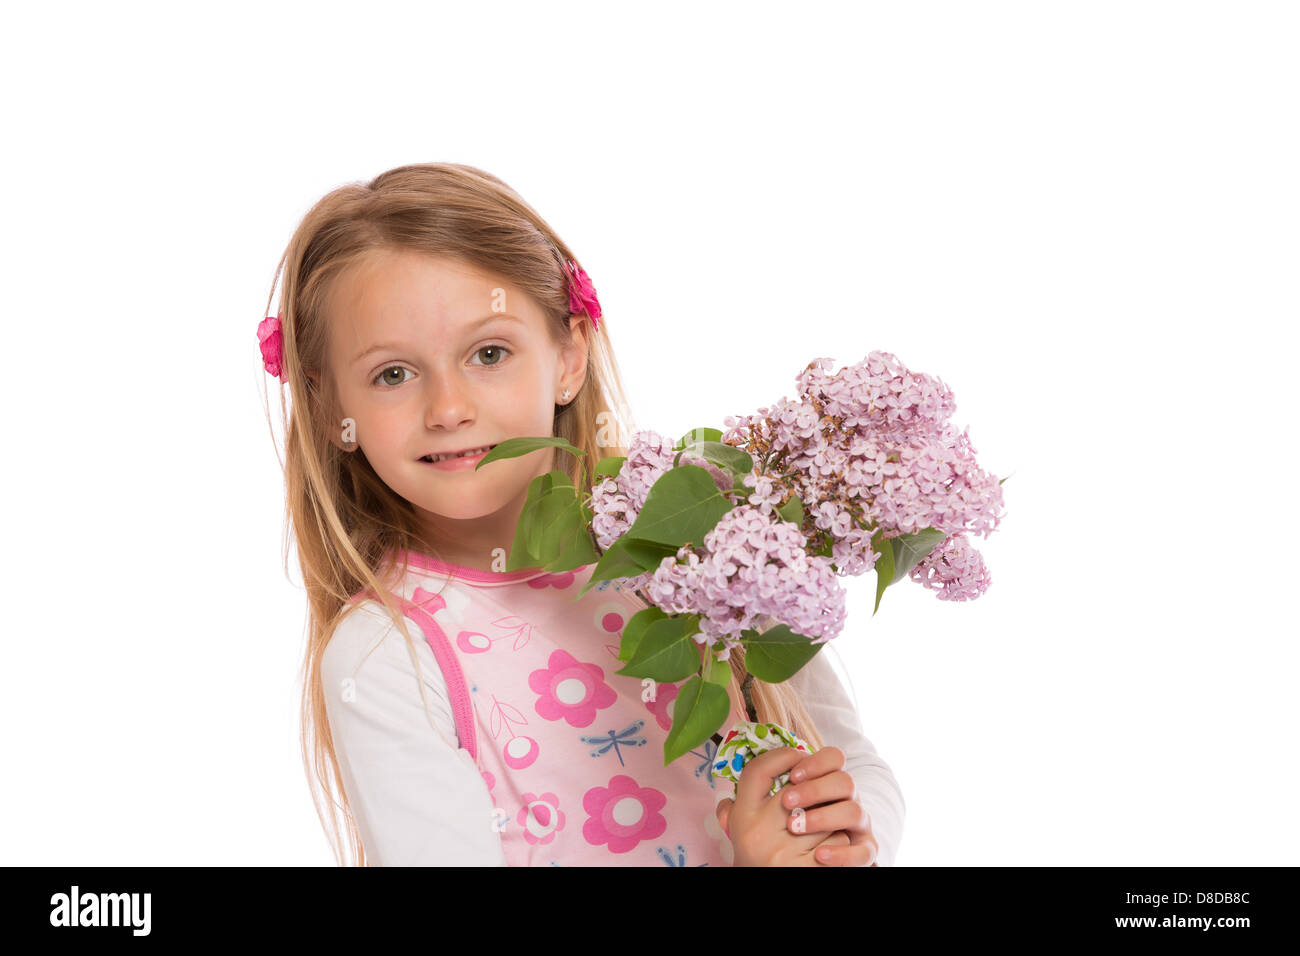 Happy little Girl with long hair portant tenue d'été et la tenue des fleurs lilas. Isolé sur fond blanc. Banque D'Images